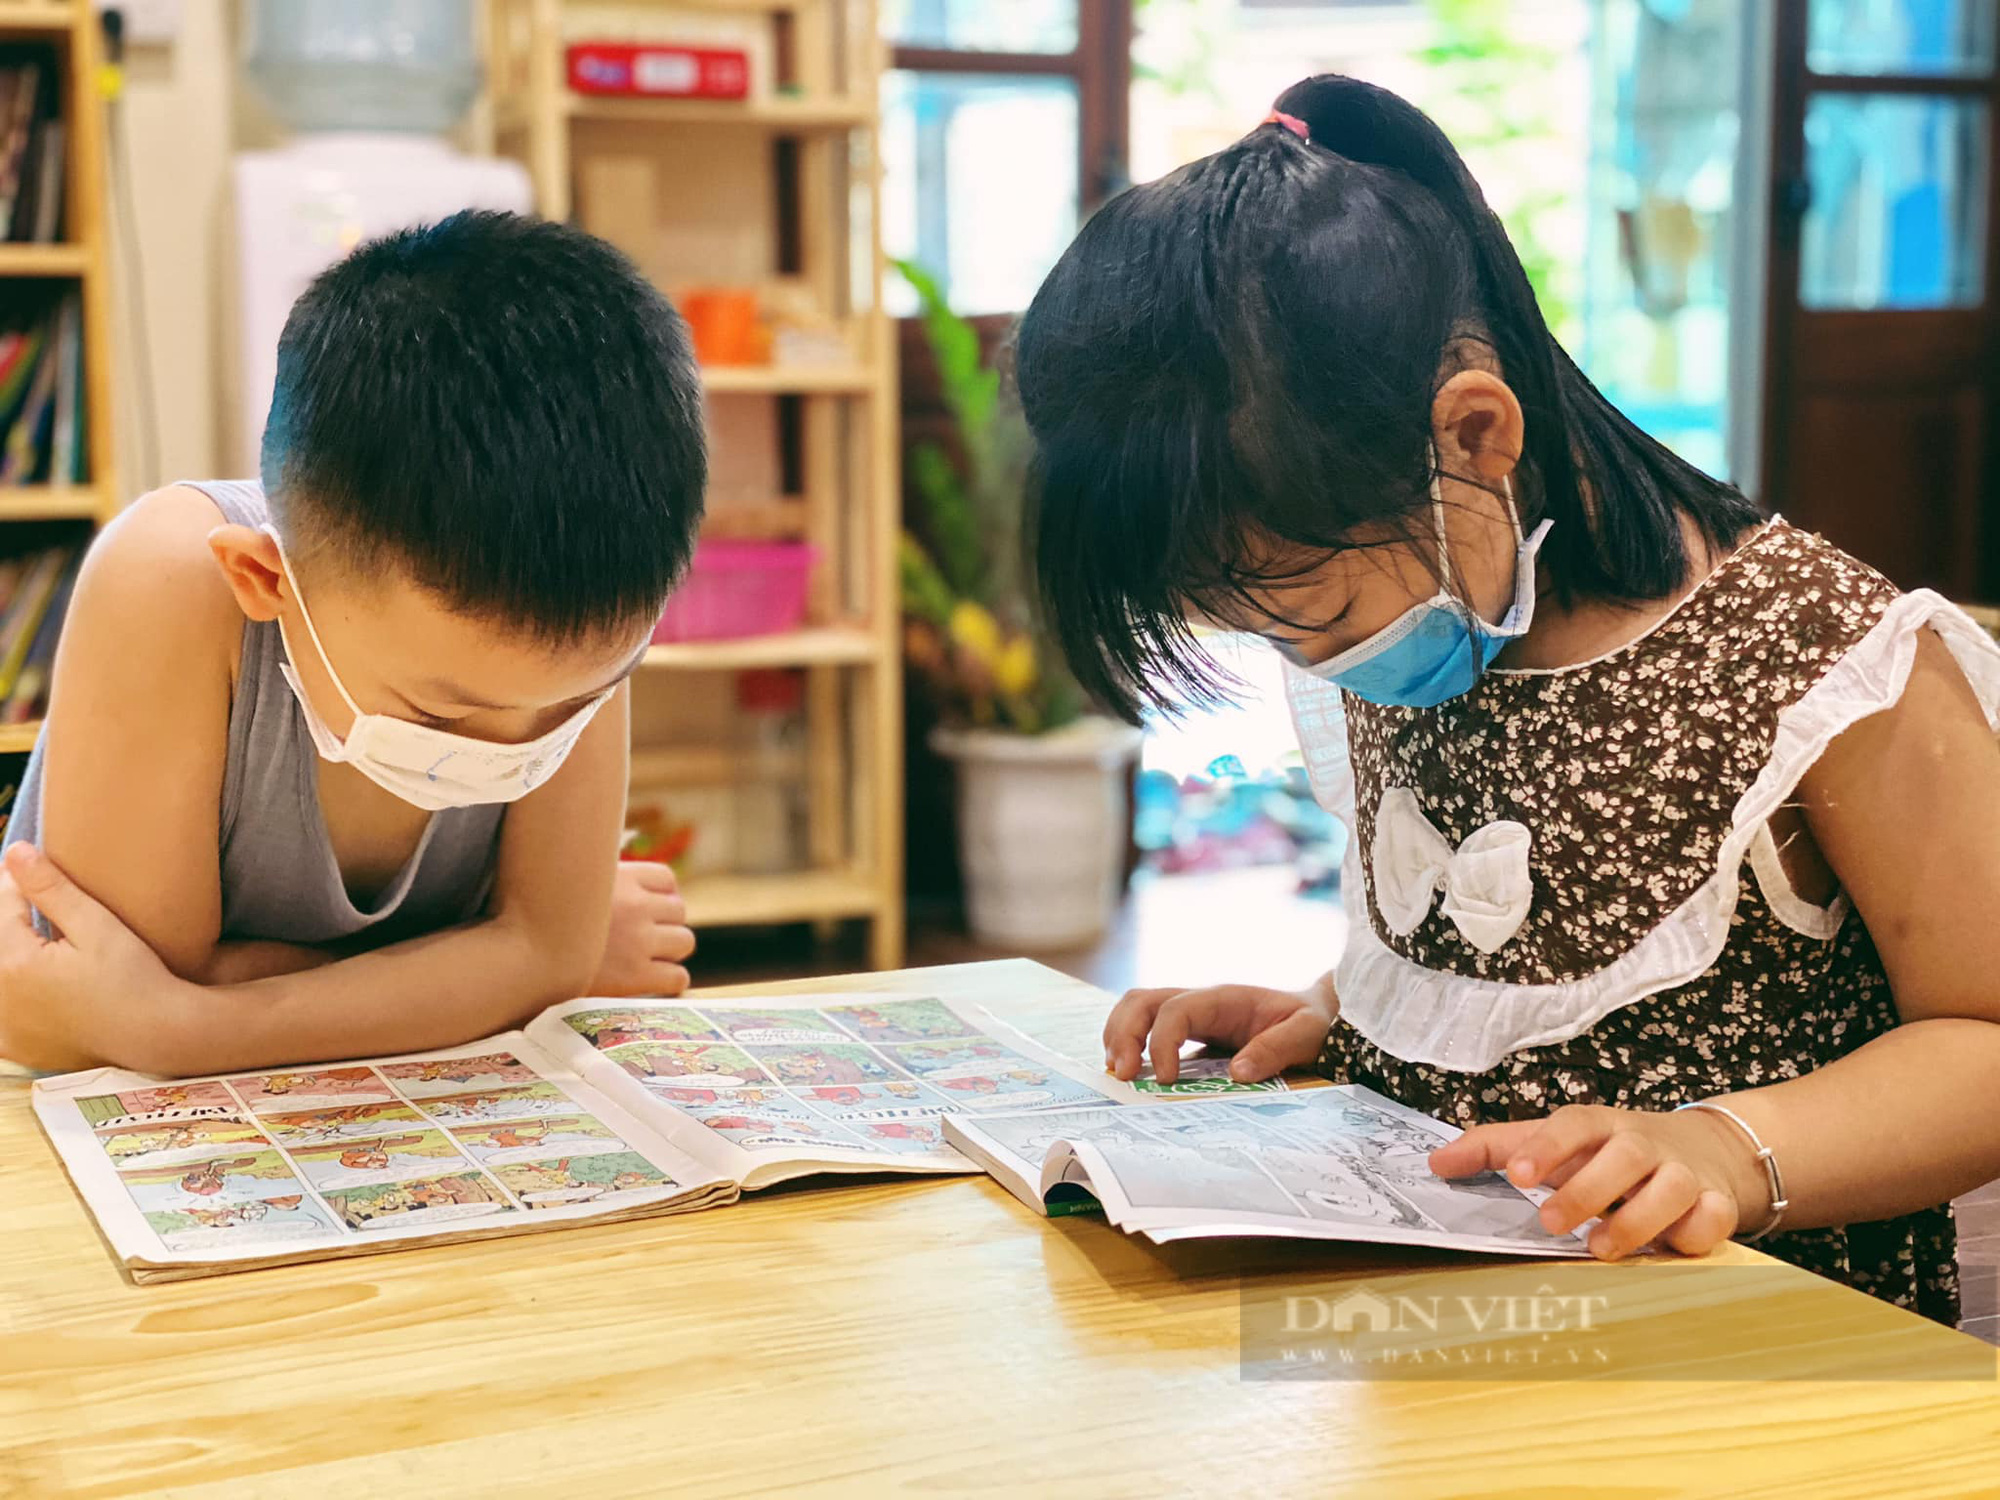 Thư viện sách đặc biệt của trẻ em làng quê Hà Nội: Nơi phát triển văn hoá đọc và lan toả tri thức (bài 2) - Ảnh 2.